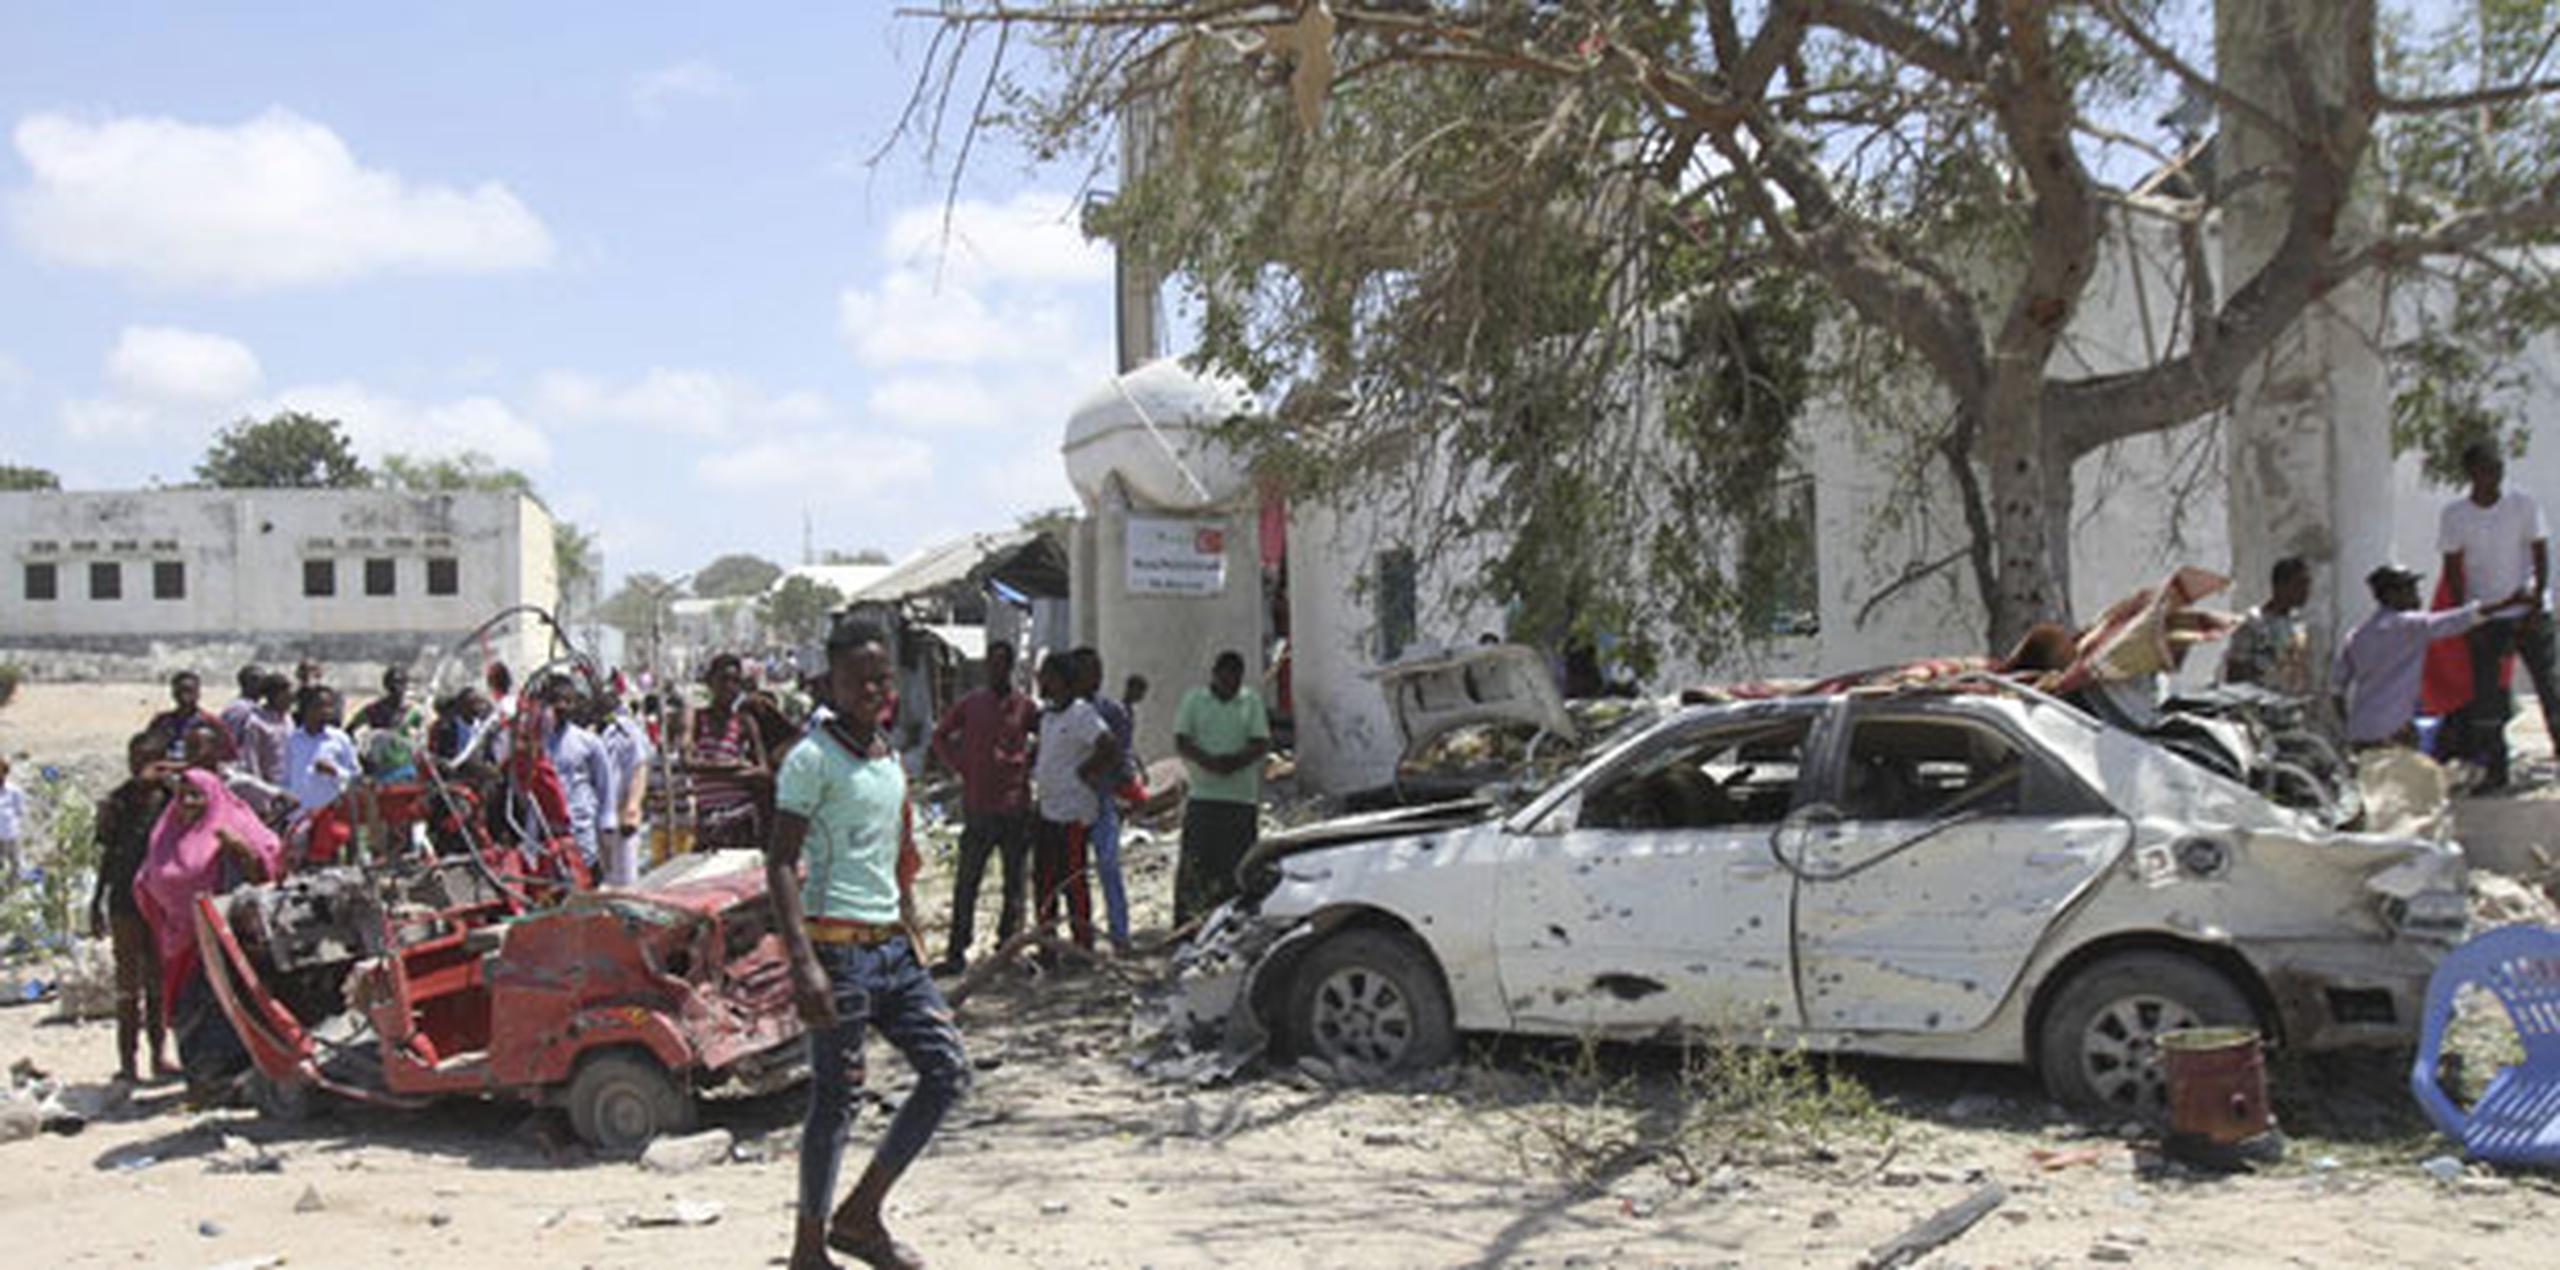 La milicia radical se atribuyó más tarde la responsabilidad por el atentado, que terminó con un periodo de calma en Mogadiscio. (EFE)